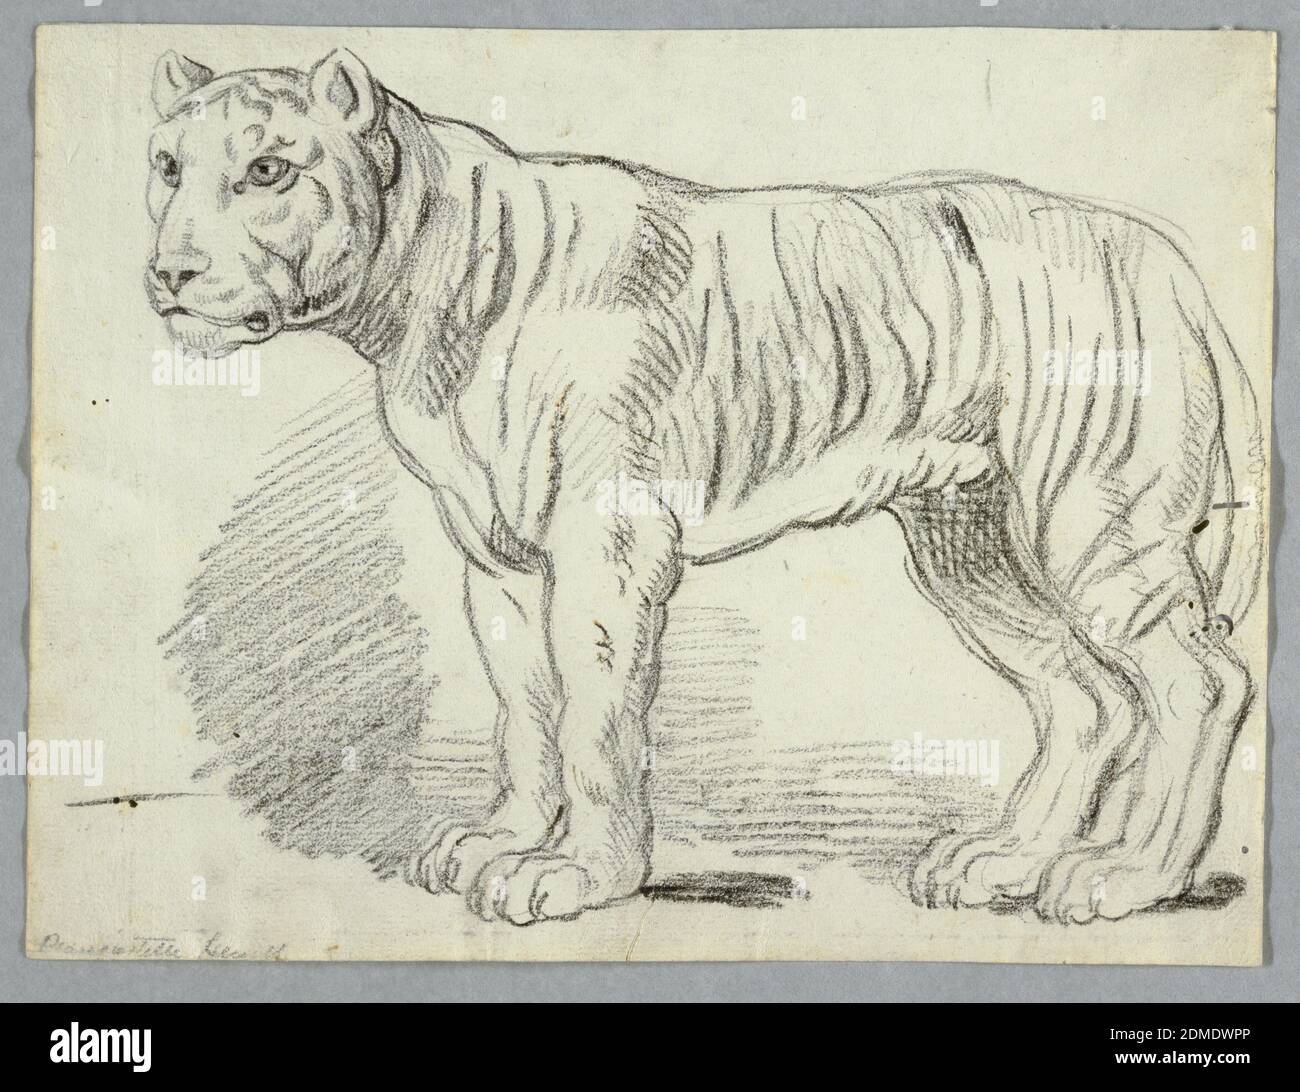 Estudio de un tigre, carbón sobre papel, tigre de pie, mirando hacia la izquierda., Italia, ca. 1815, estudios de naturaleza, dibujo Foto de stock